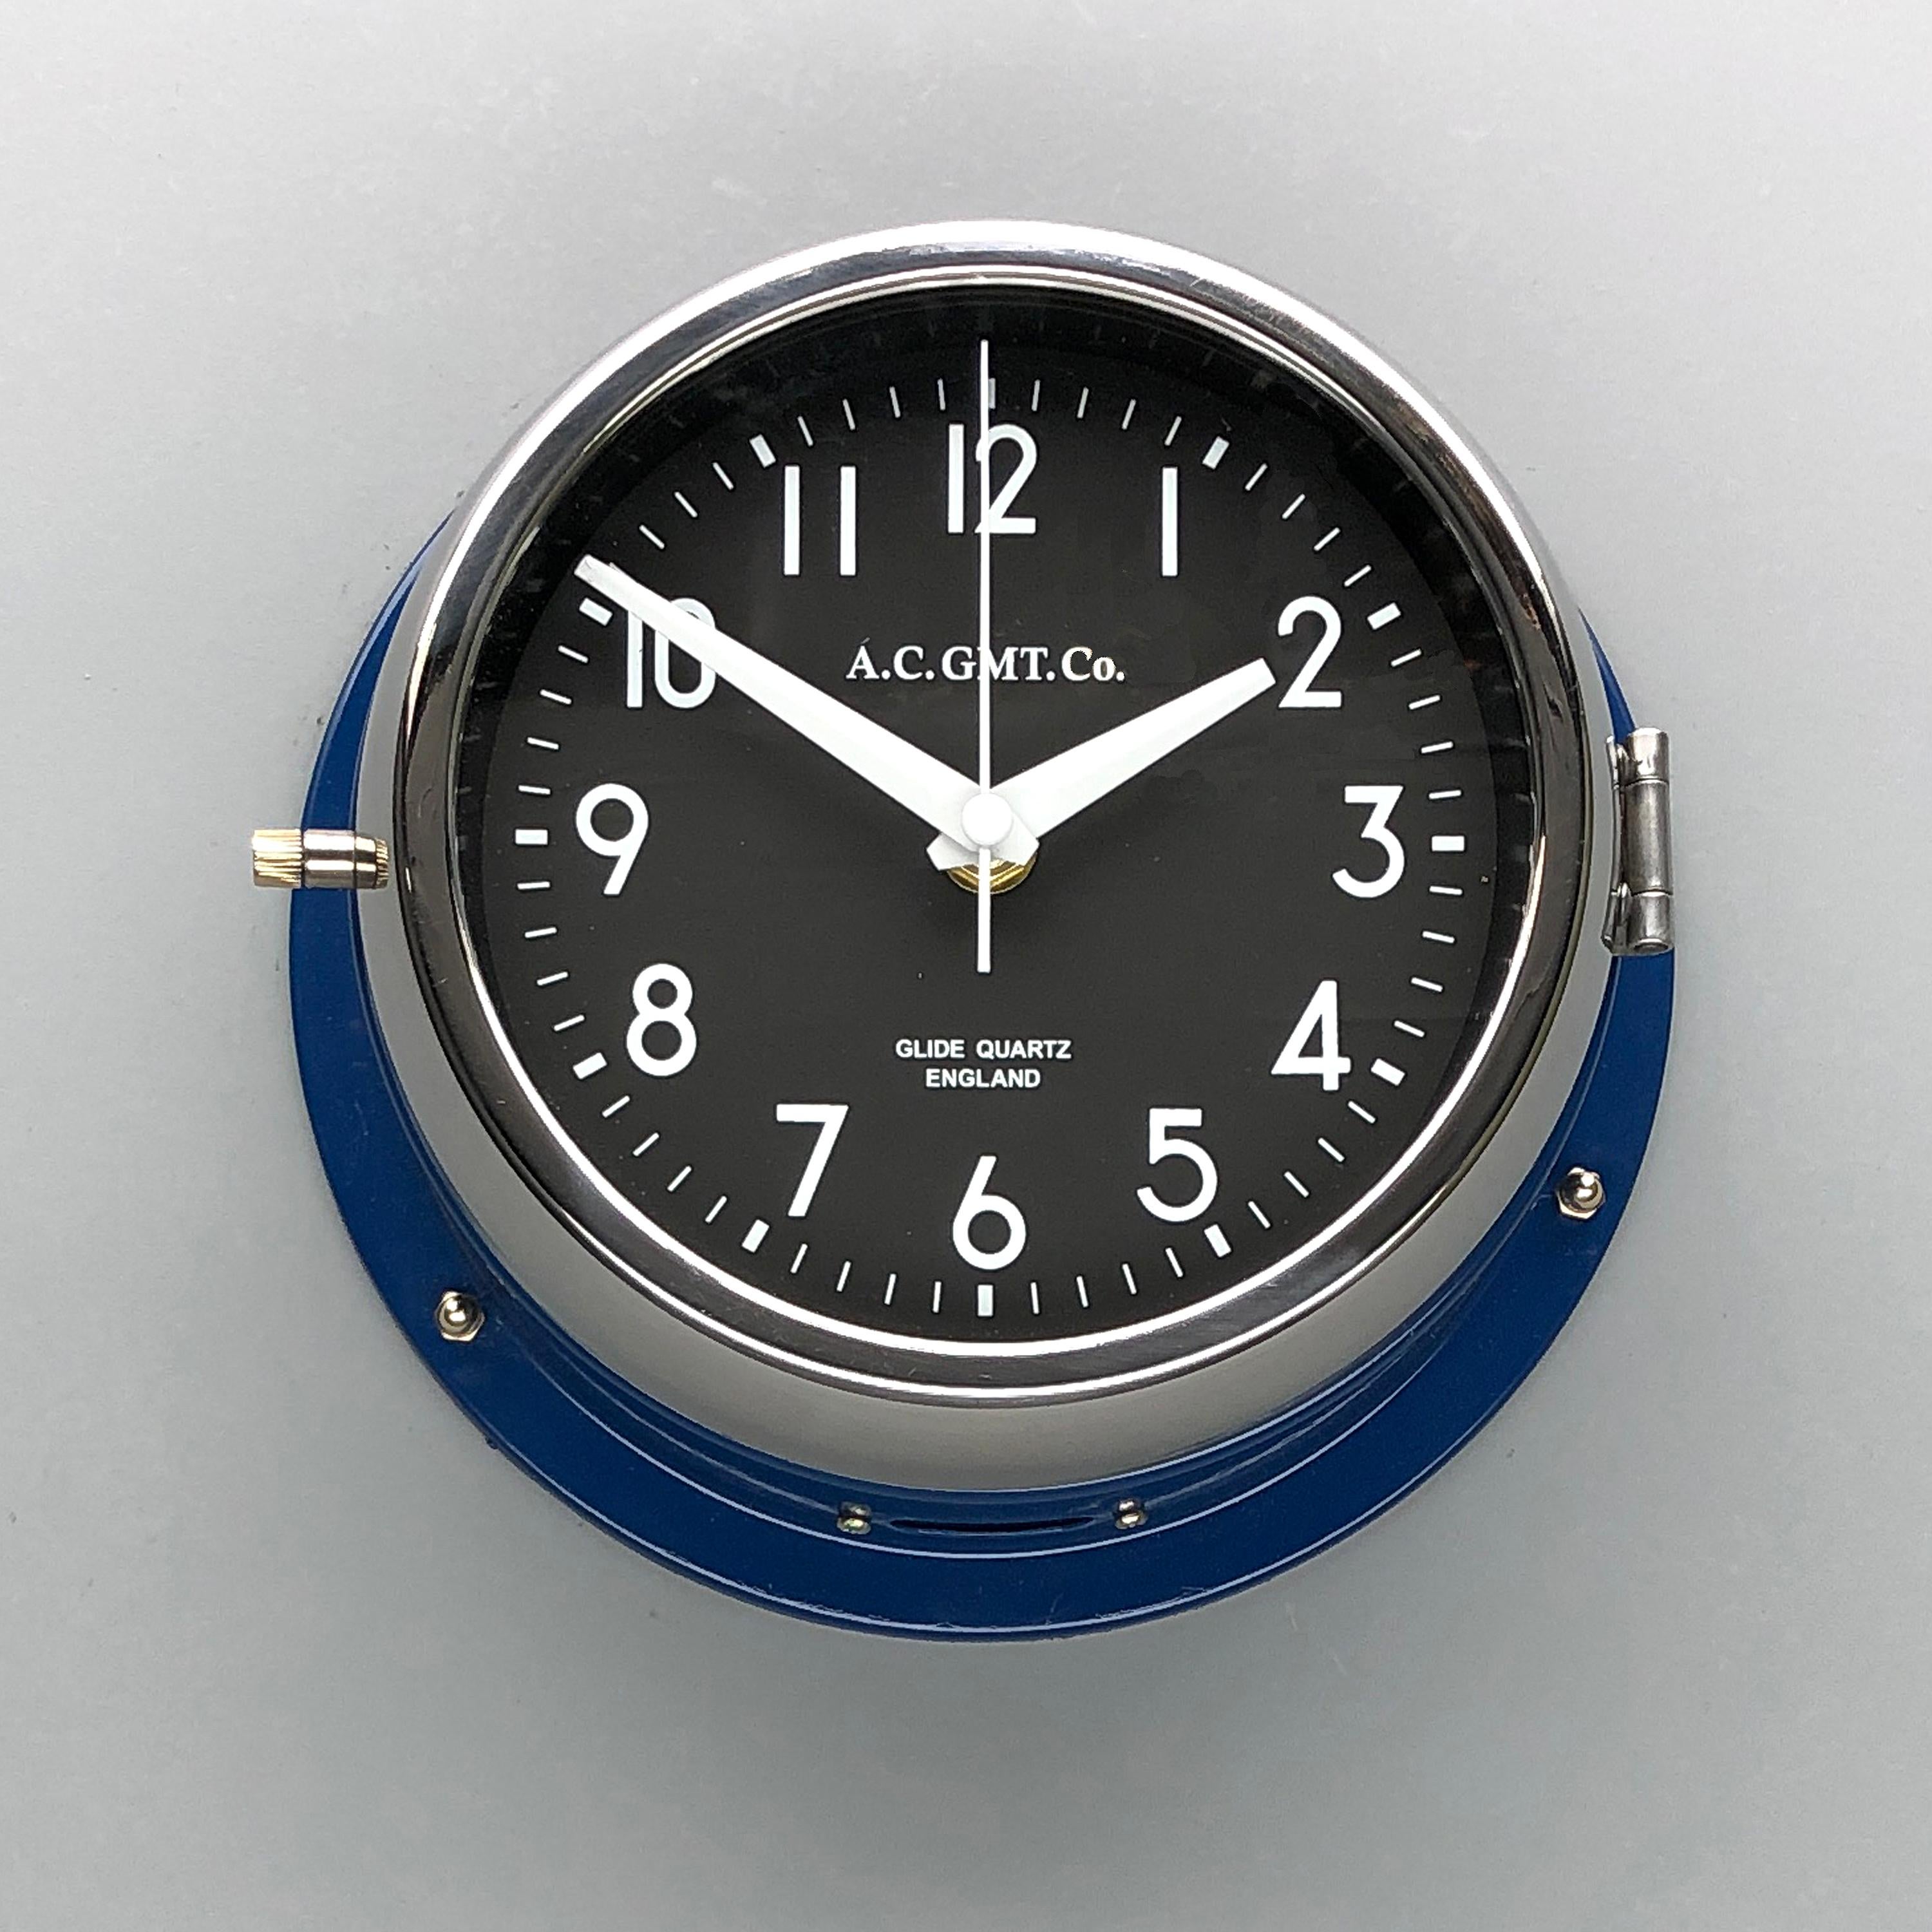 Von industriellen Schrottplätzen gerettet und in unserer britischen Werkstatt wieder zum Leben erweckt, ermöglicht uns unser fachmännischer Prozess, eine qualitativ hochwertige Uhr von luxuriösem Standard herzustellen. 
Bei A.I.C. GMT Co. bringen